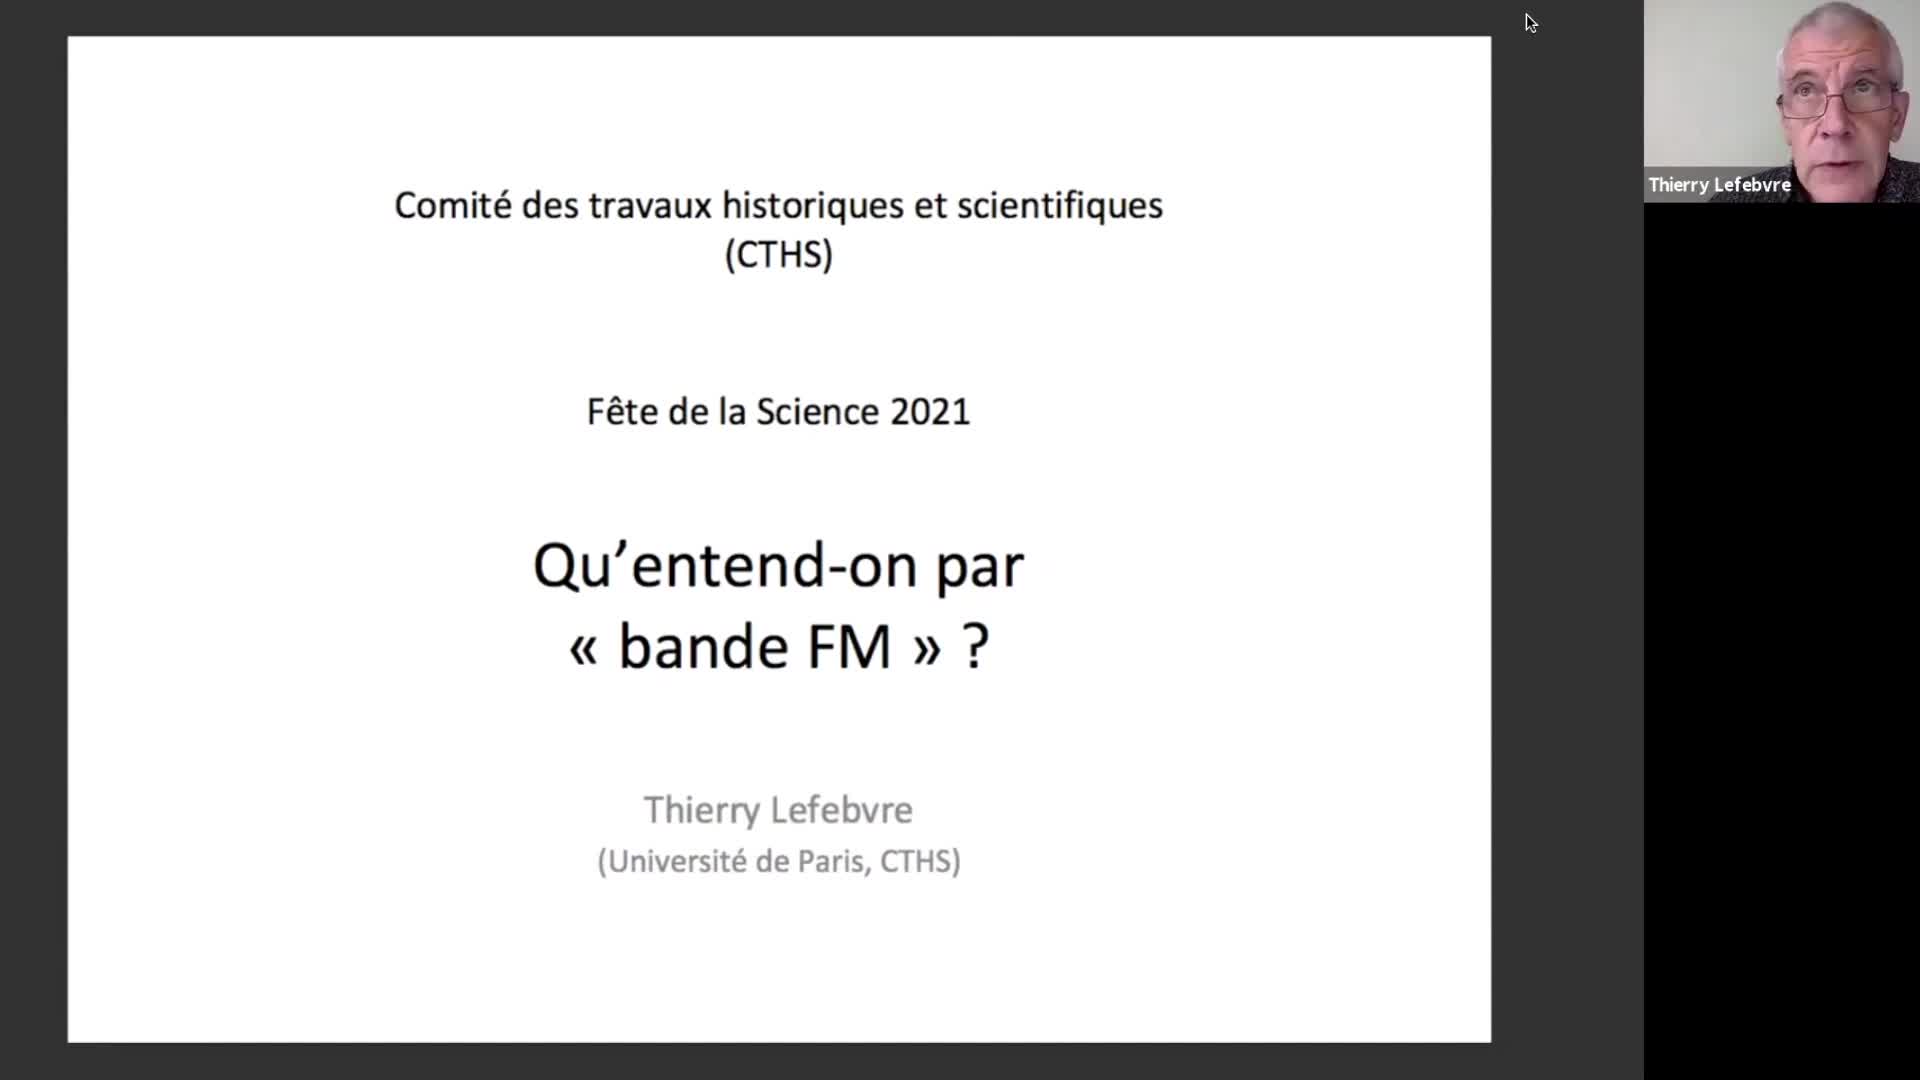 Fête de la Science 2021
Thierry Lefebvre : Qu’entend-on par “bande FM” ?